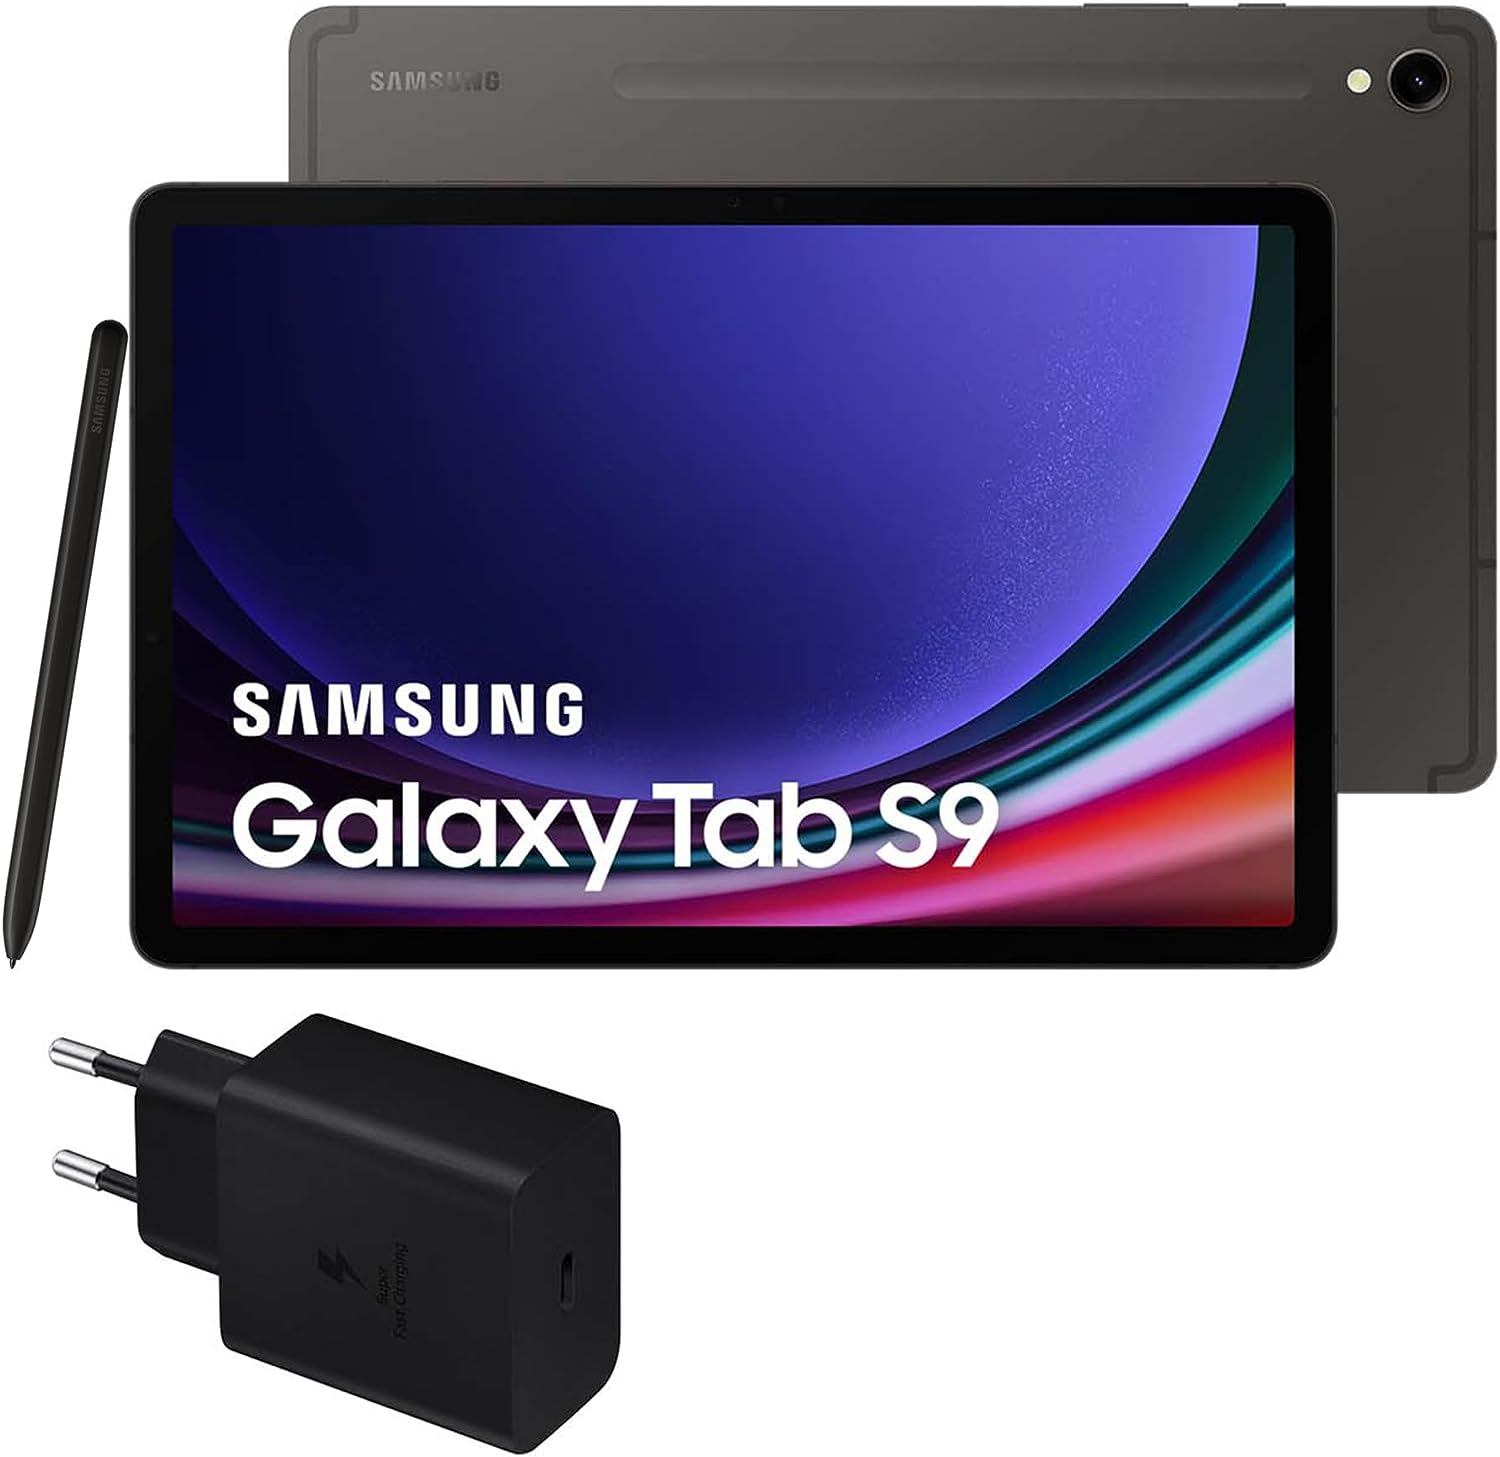 Samsung Galaxy Tab S9 vs Samsung Galaxy Tab S9+ vs Samsung Galaxy Tab S9 Ultra